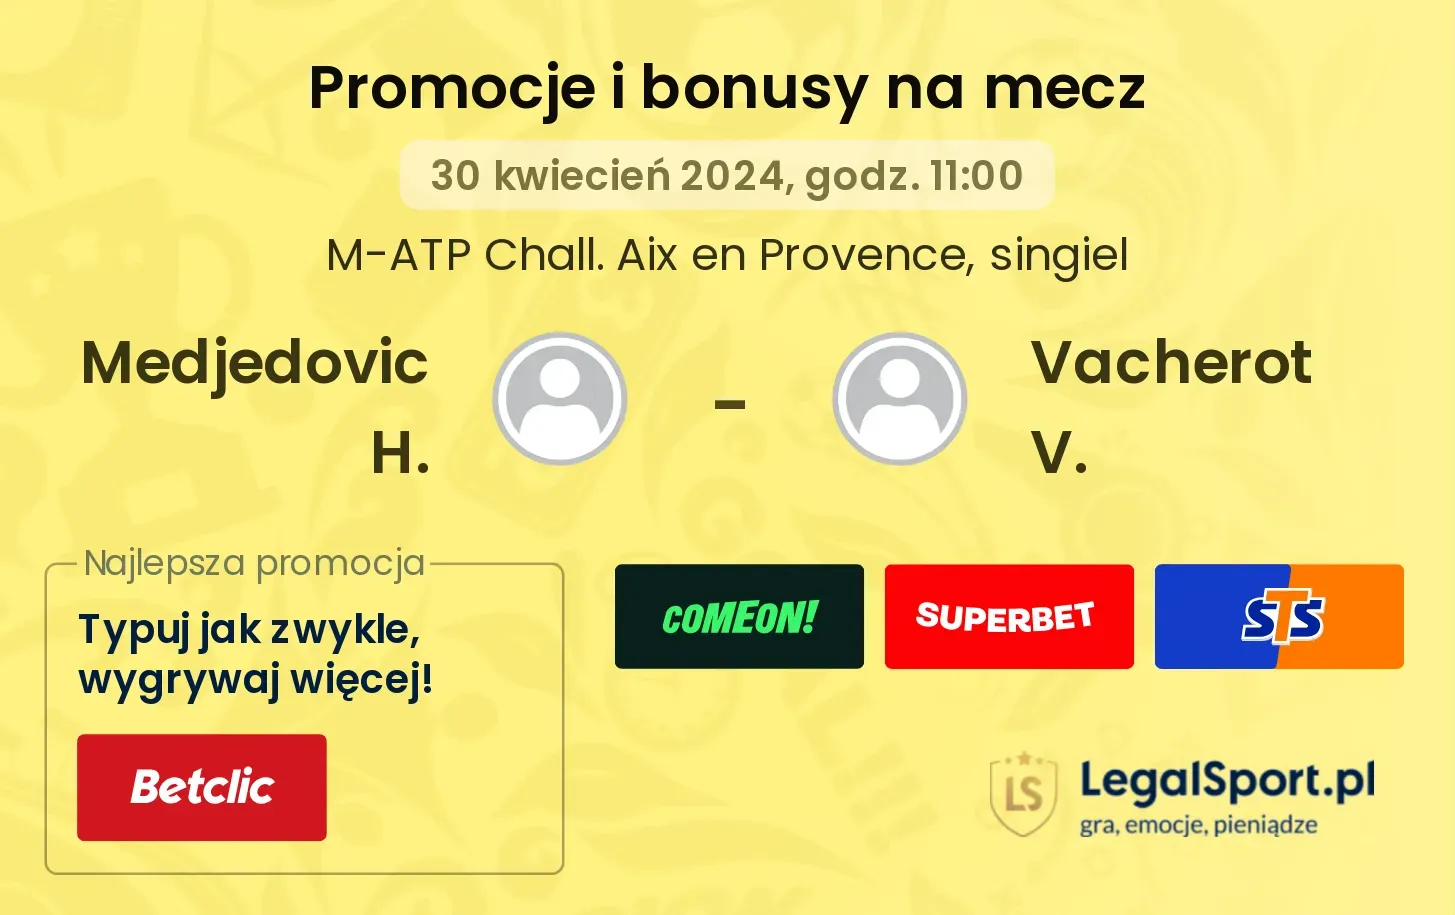 Medjedovic H. - Vacherot V. promocje bonusy na mecz